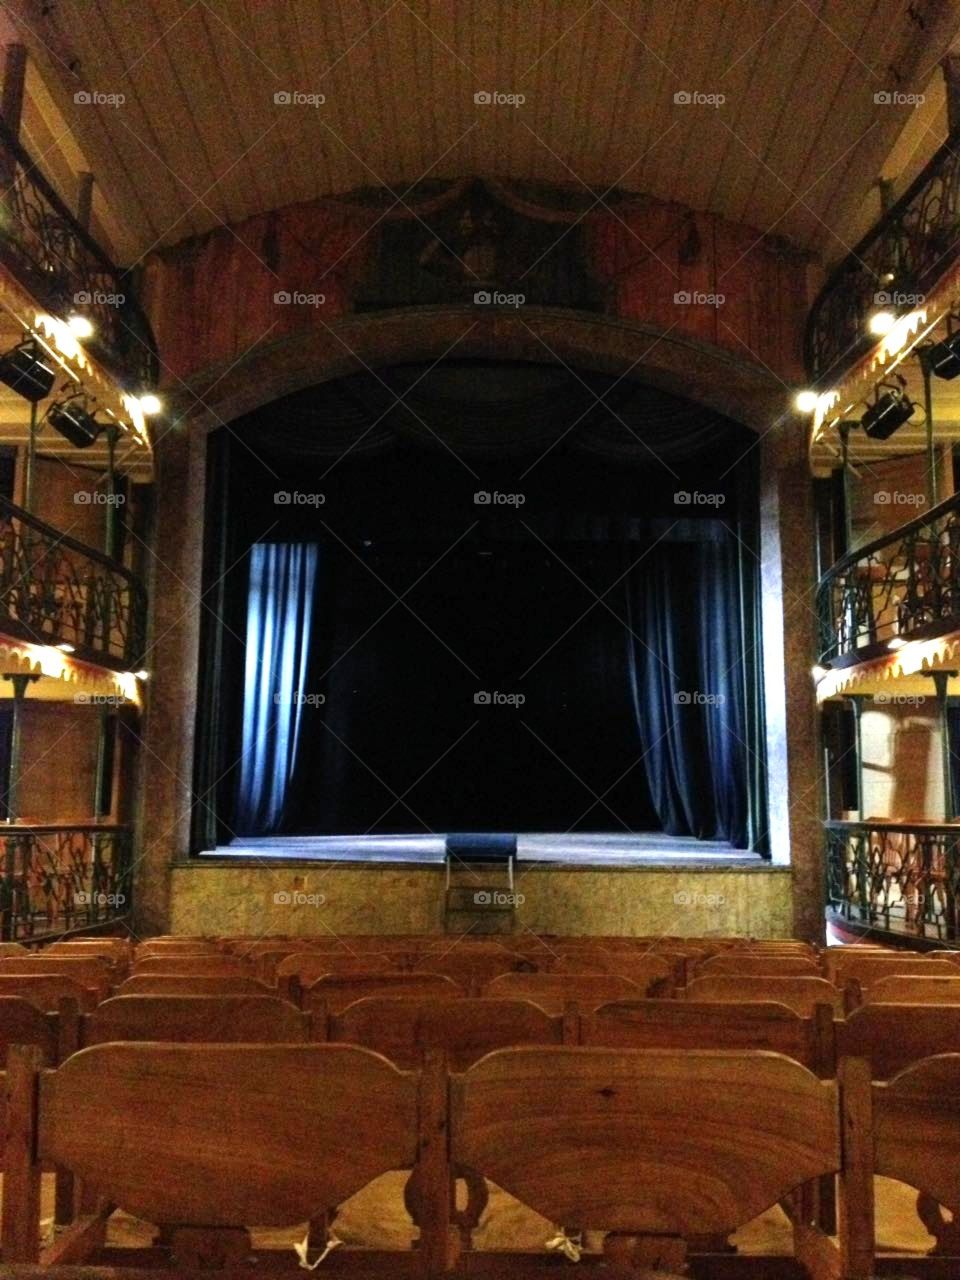 Theatre, Ouro Preto, Brazil